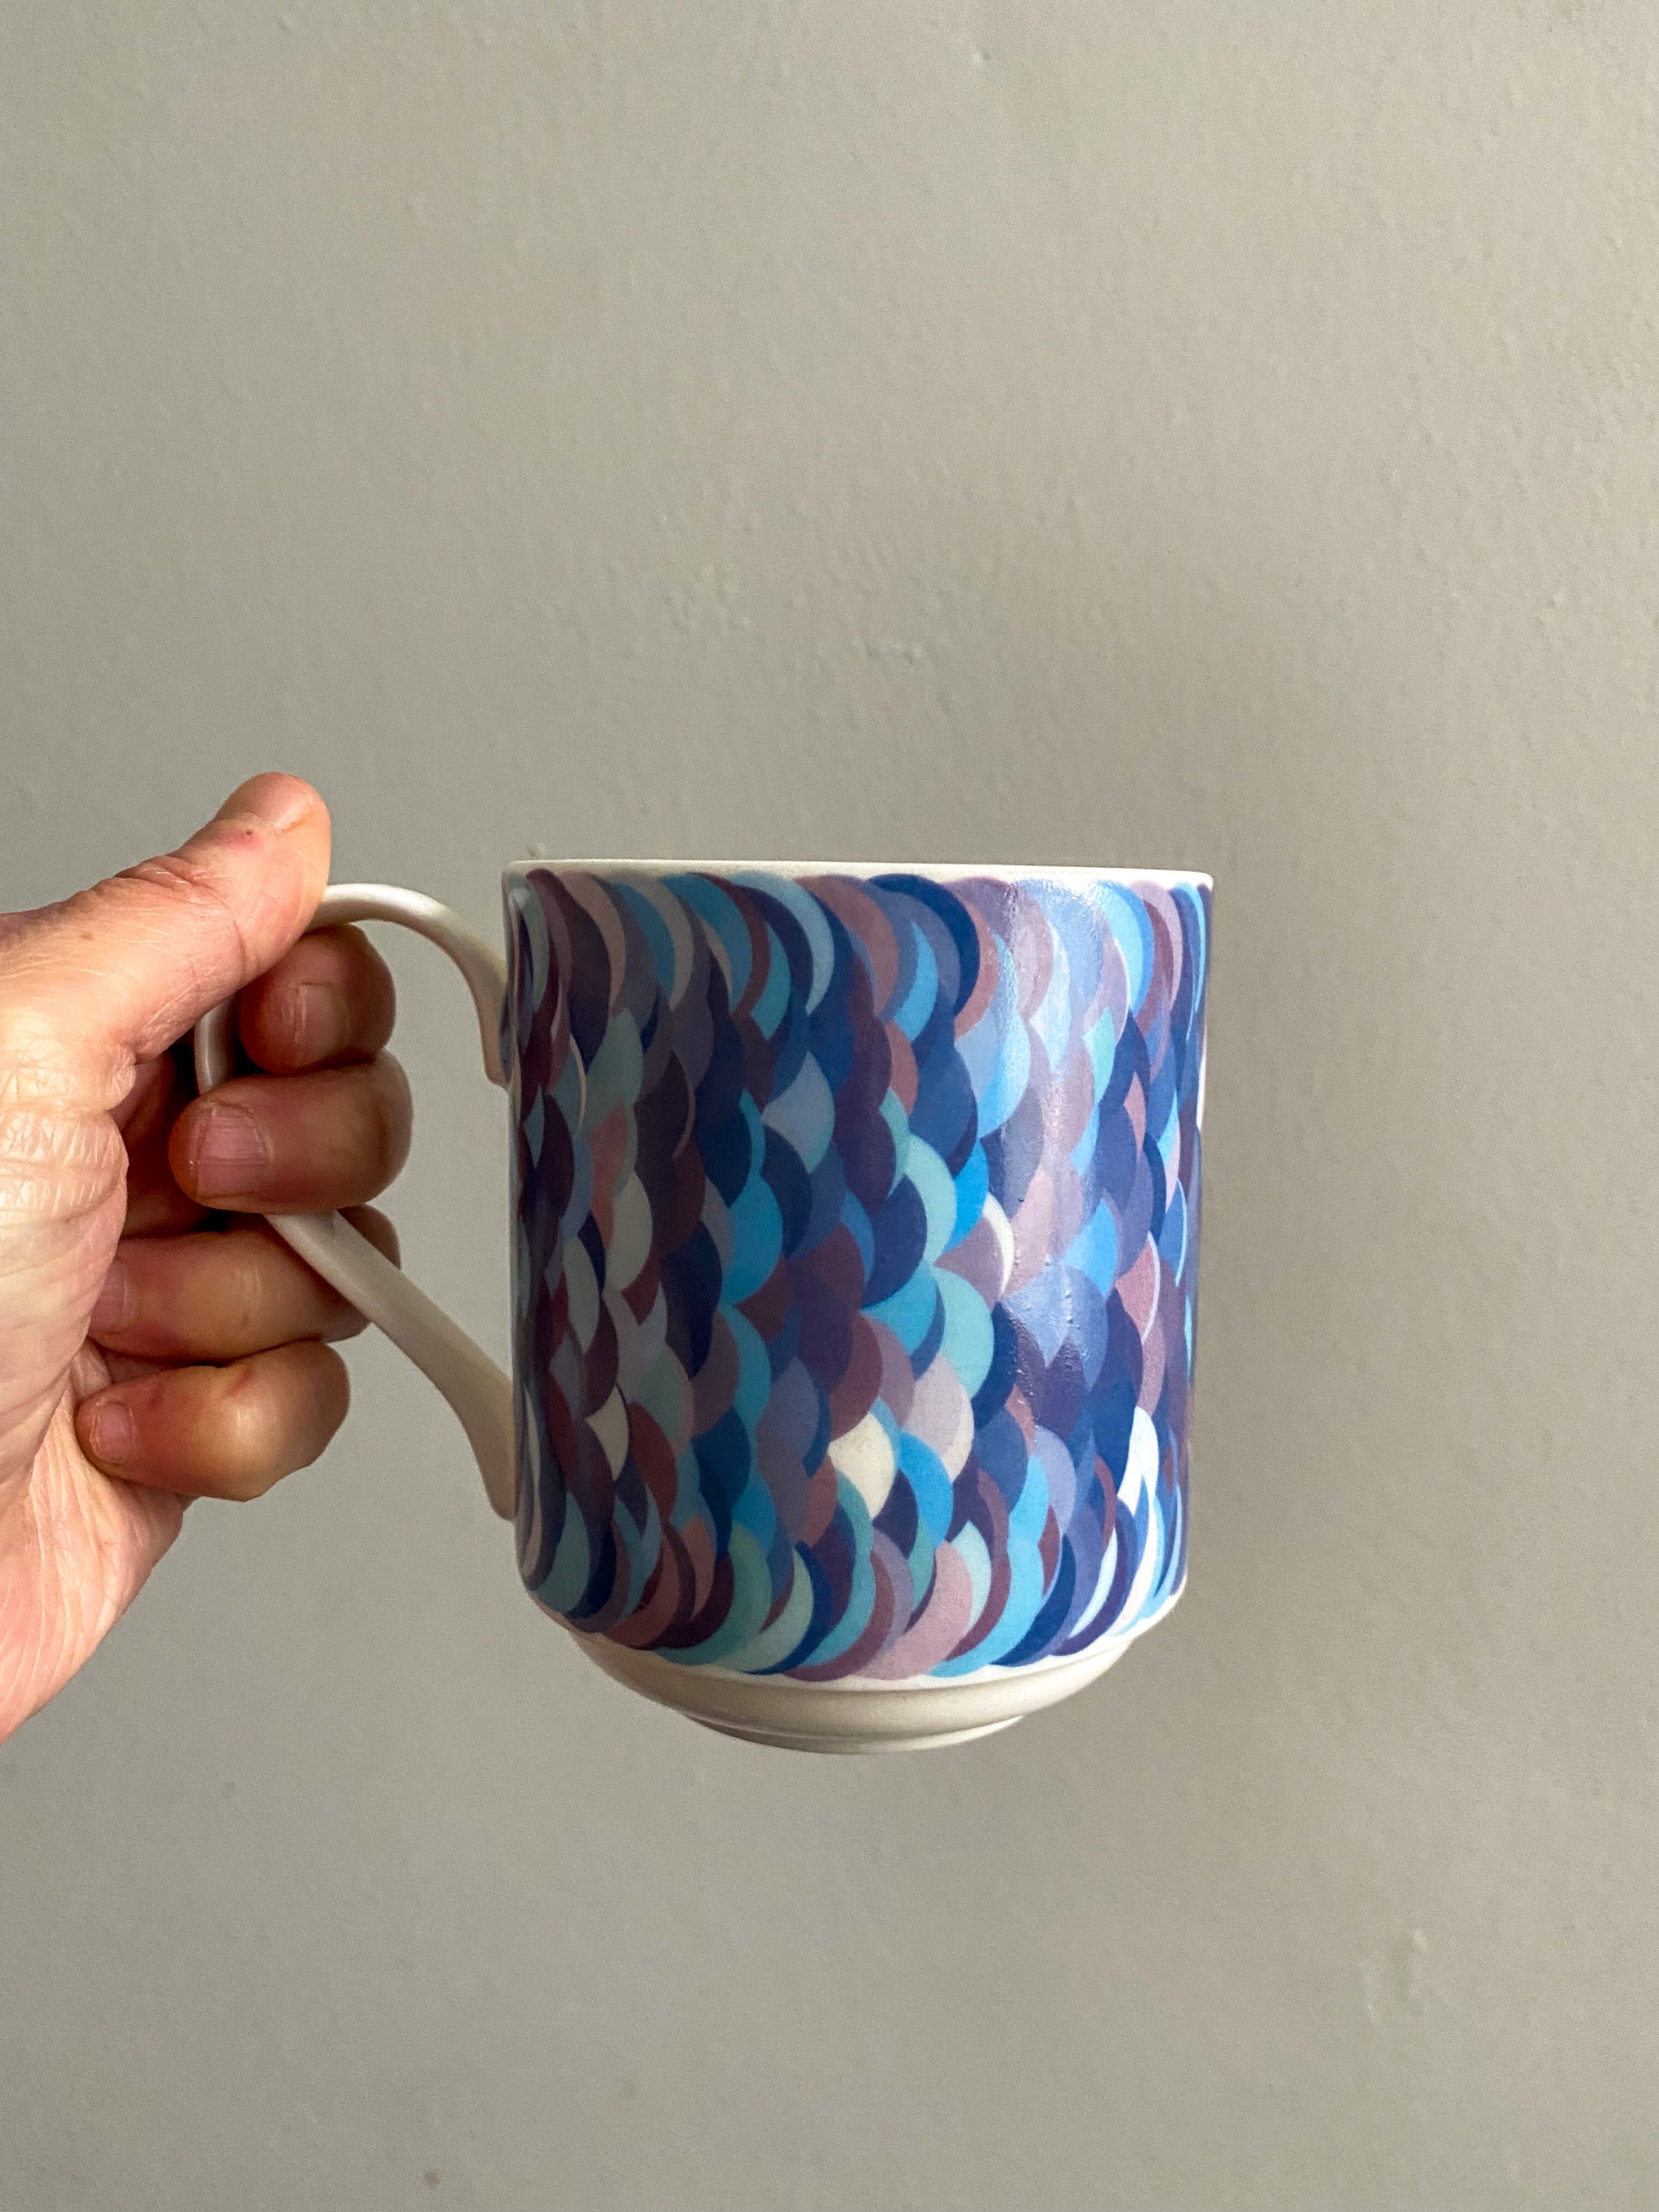 Bone china mug with purple/blue pattern of mathematically plotted circles